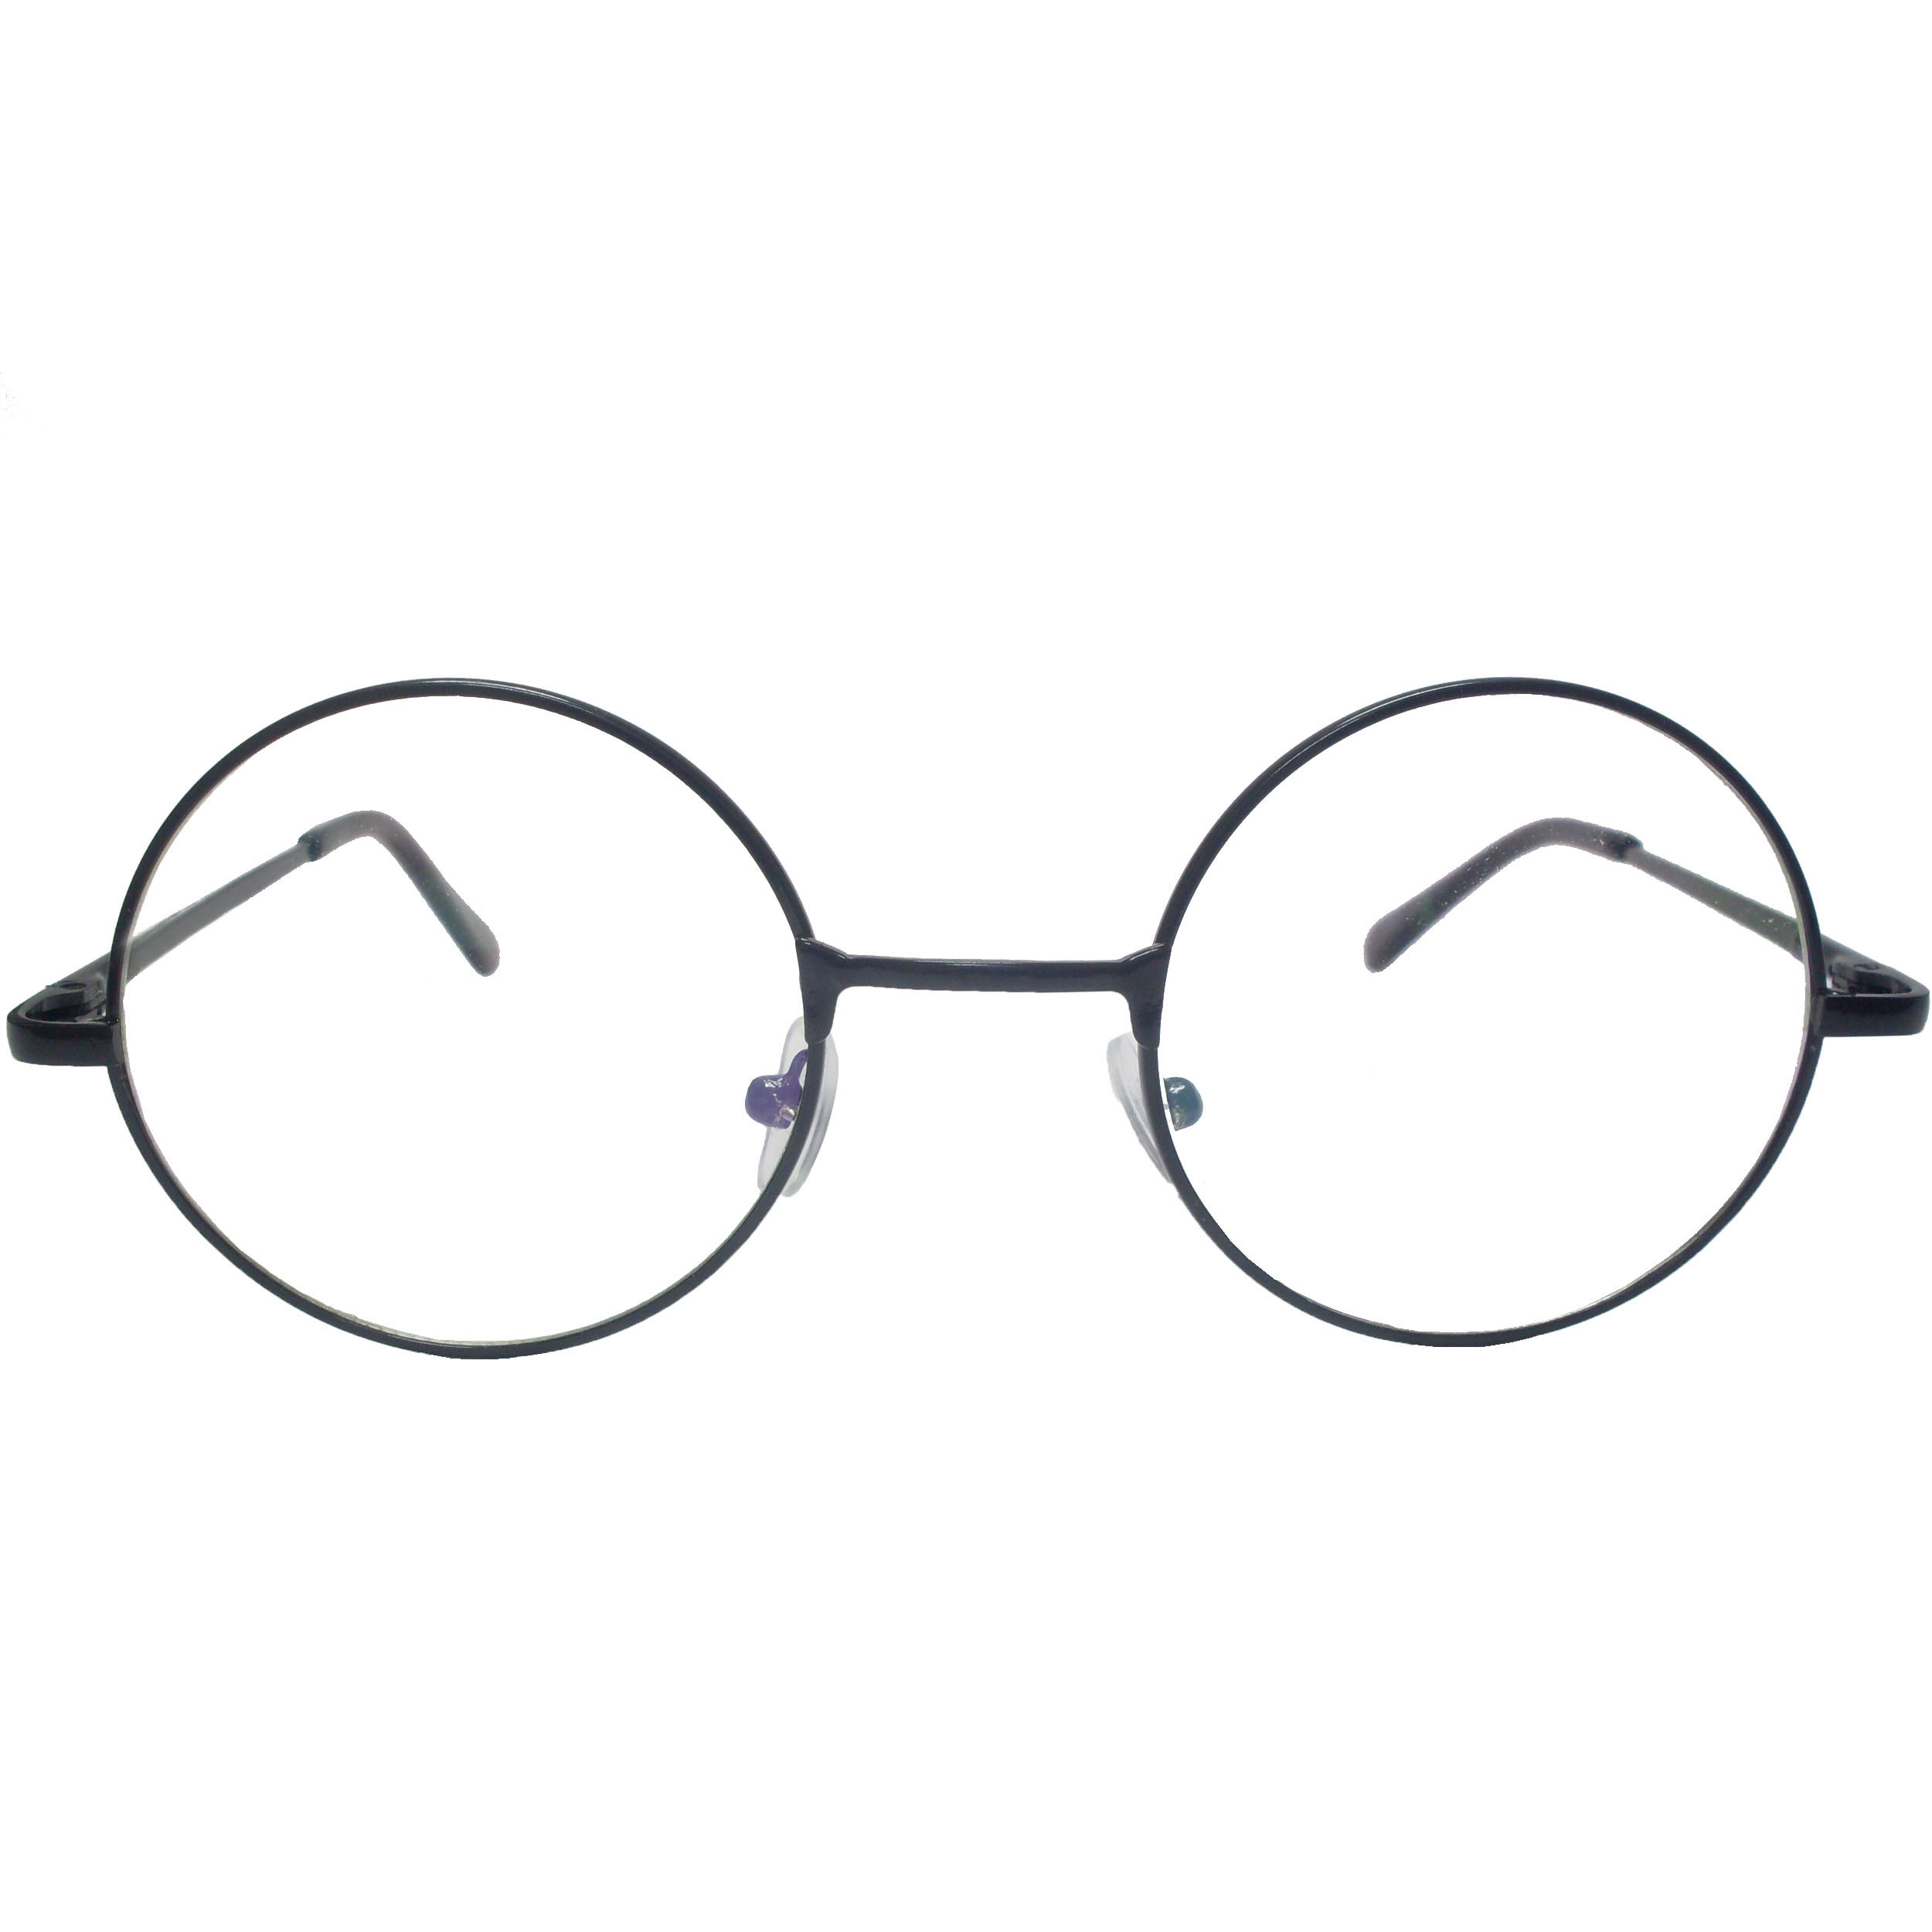 فریم عینک طبی مدل T 150032 -  - 1